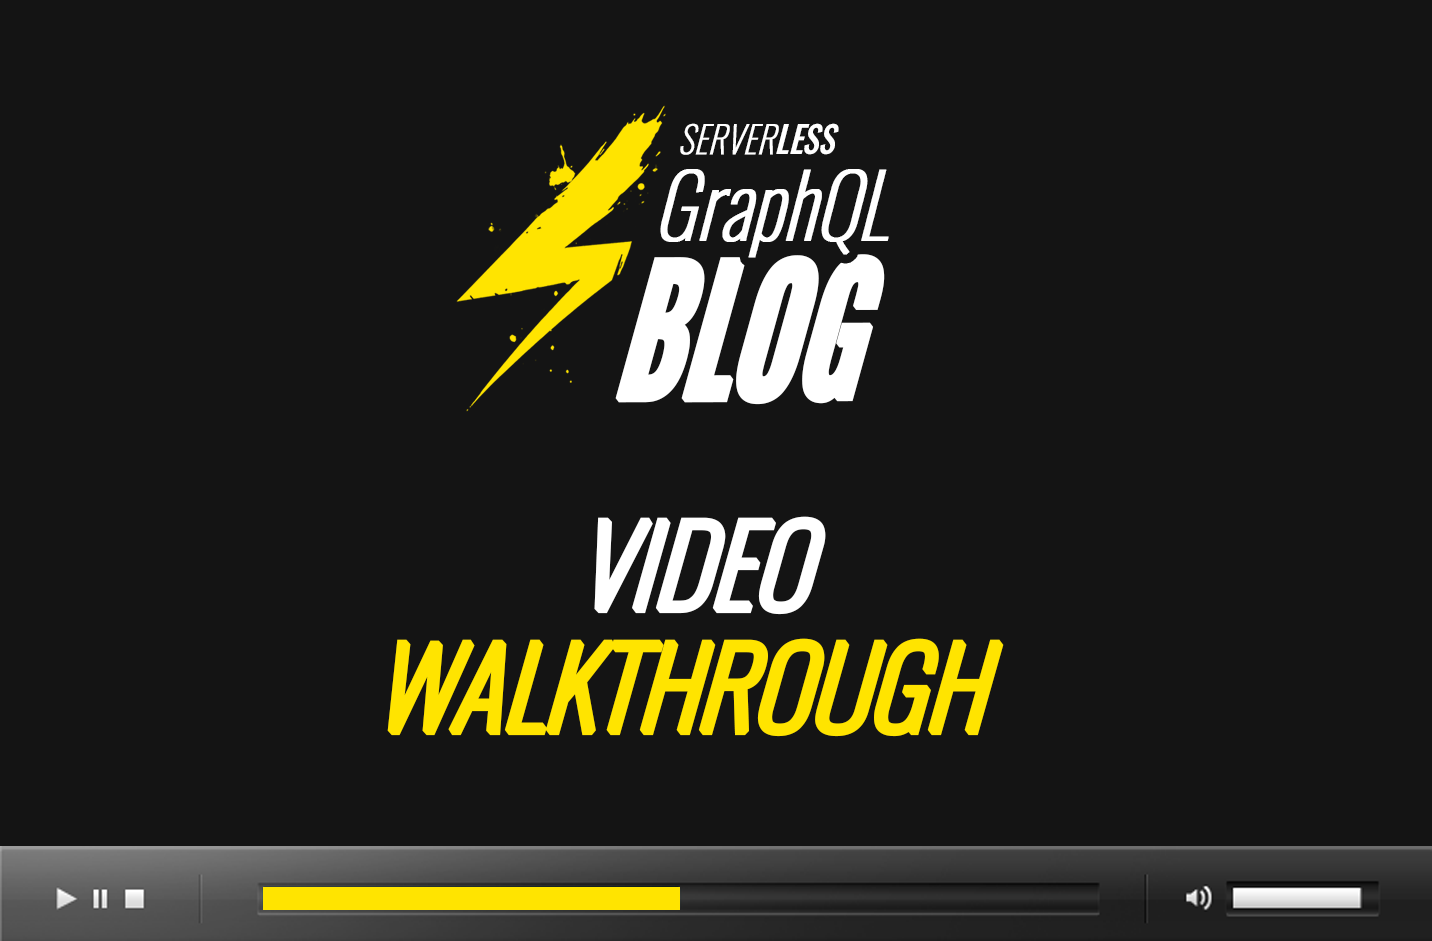 Serverless GraphQL Blog Video Walkthrough